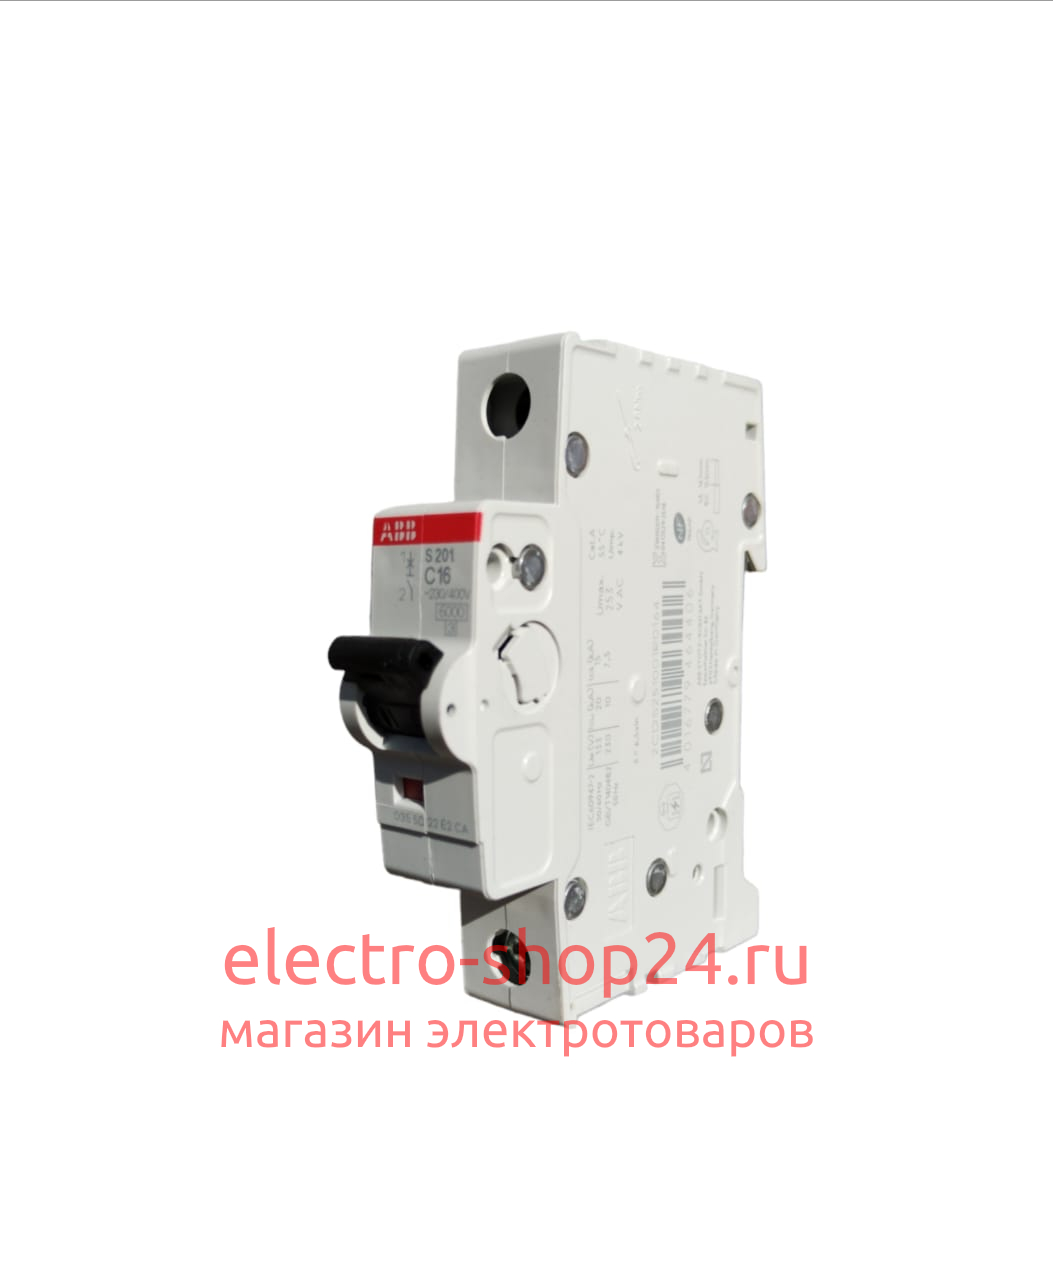 S201 C16 Автоматический выключатель 1-полюсный 16А 6кА (хар-ка C) ABB 2CDS251001R0164 2CDS251001R0164 - магазин электротехники Electroshop